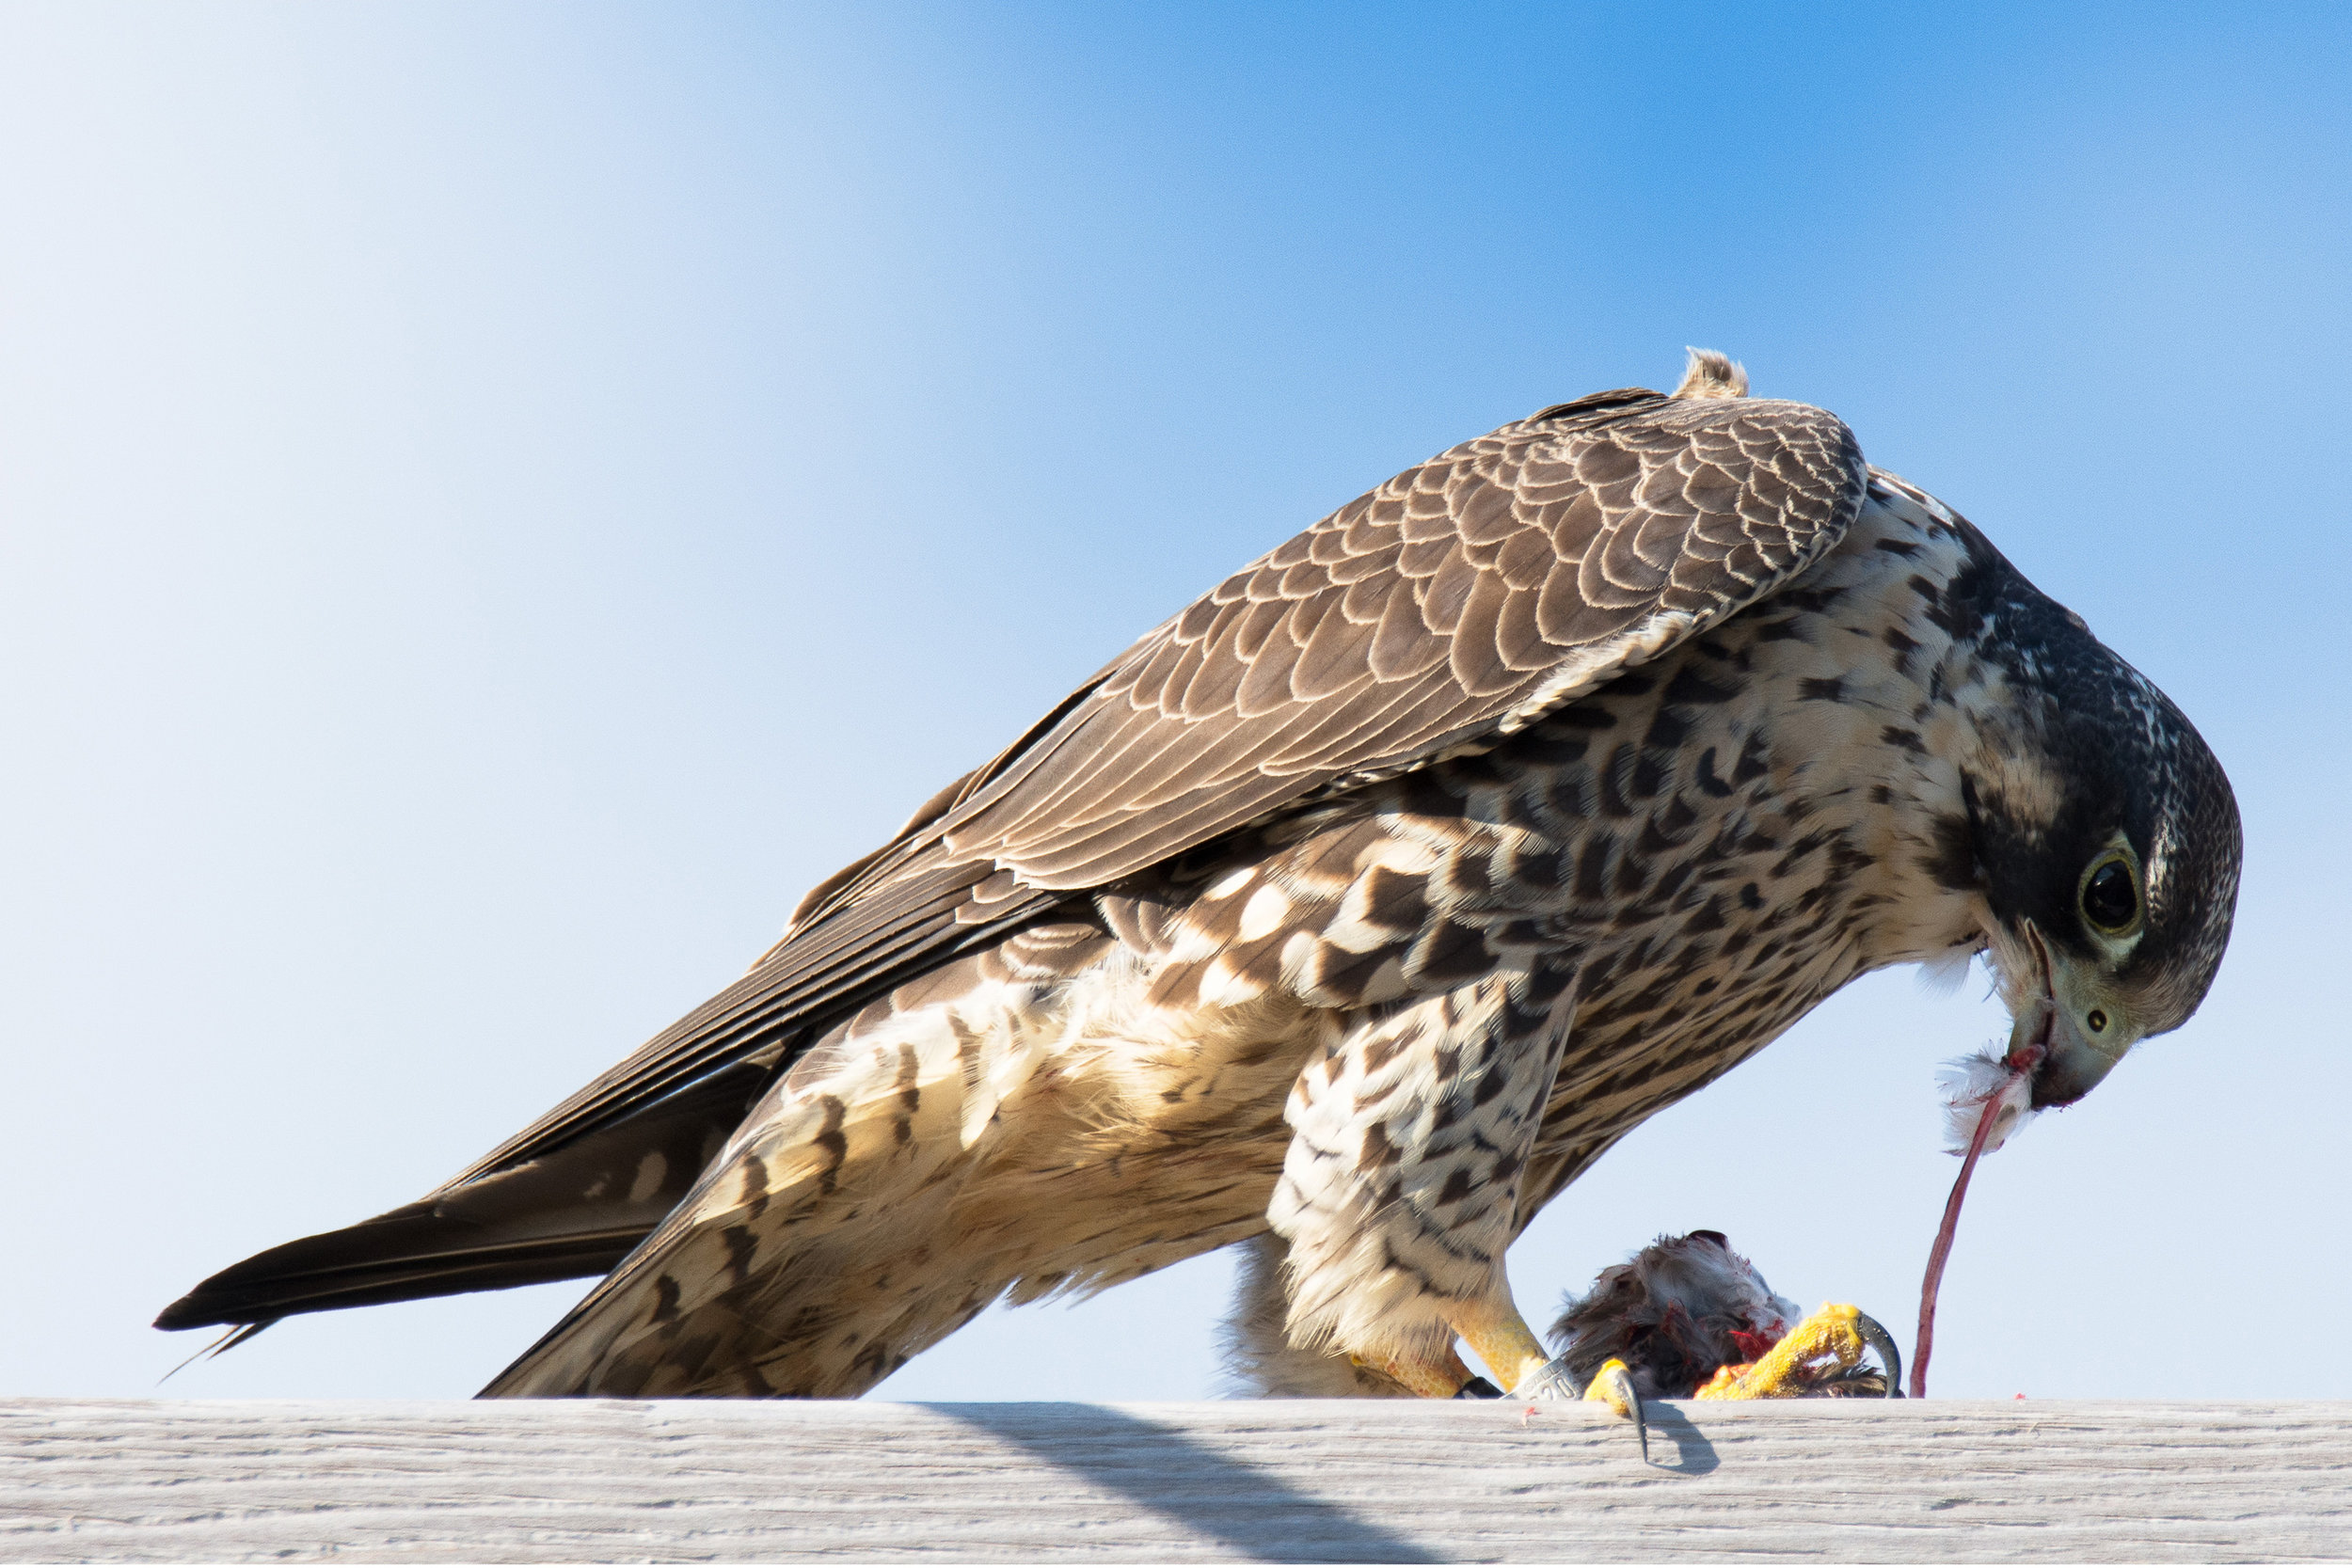  Peregrine Falcon, 2016 